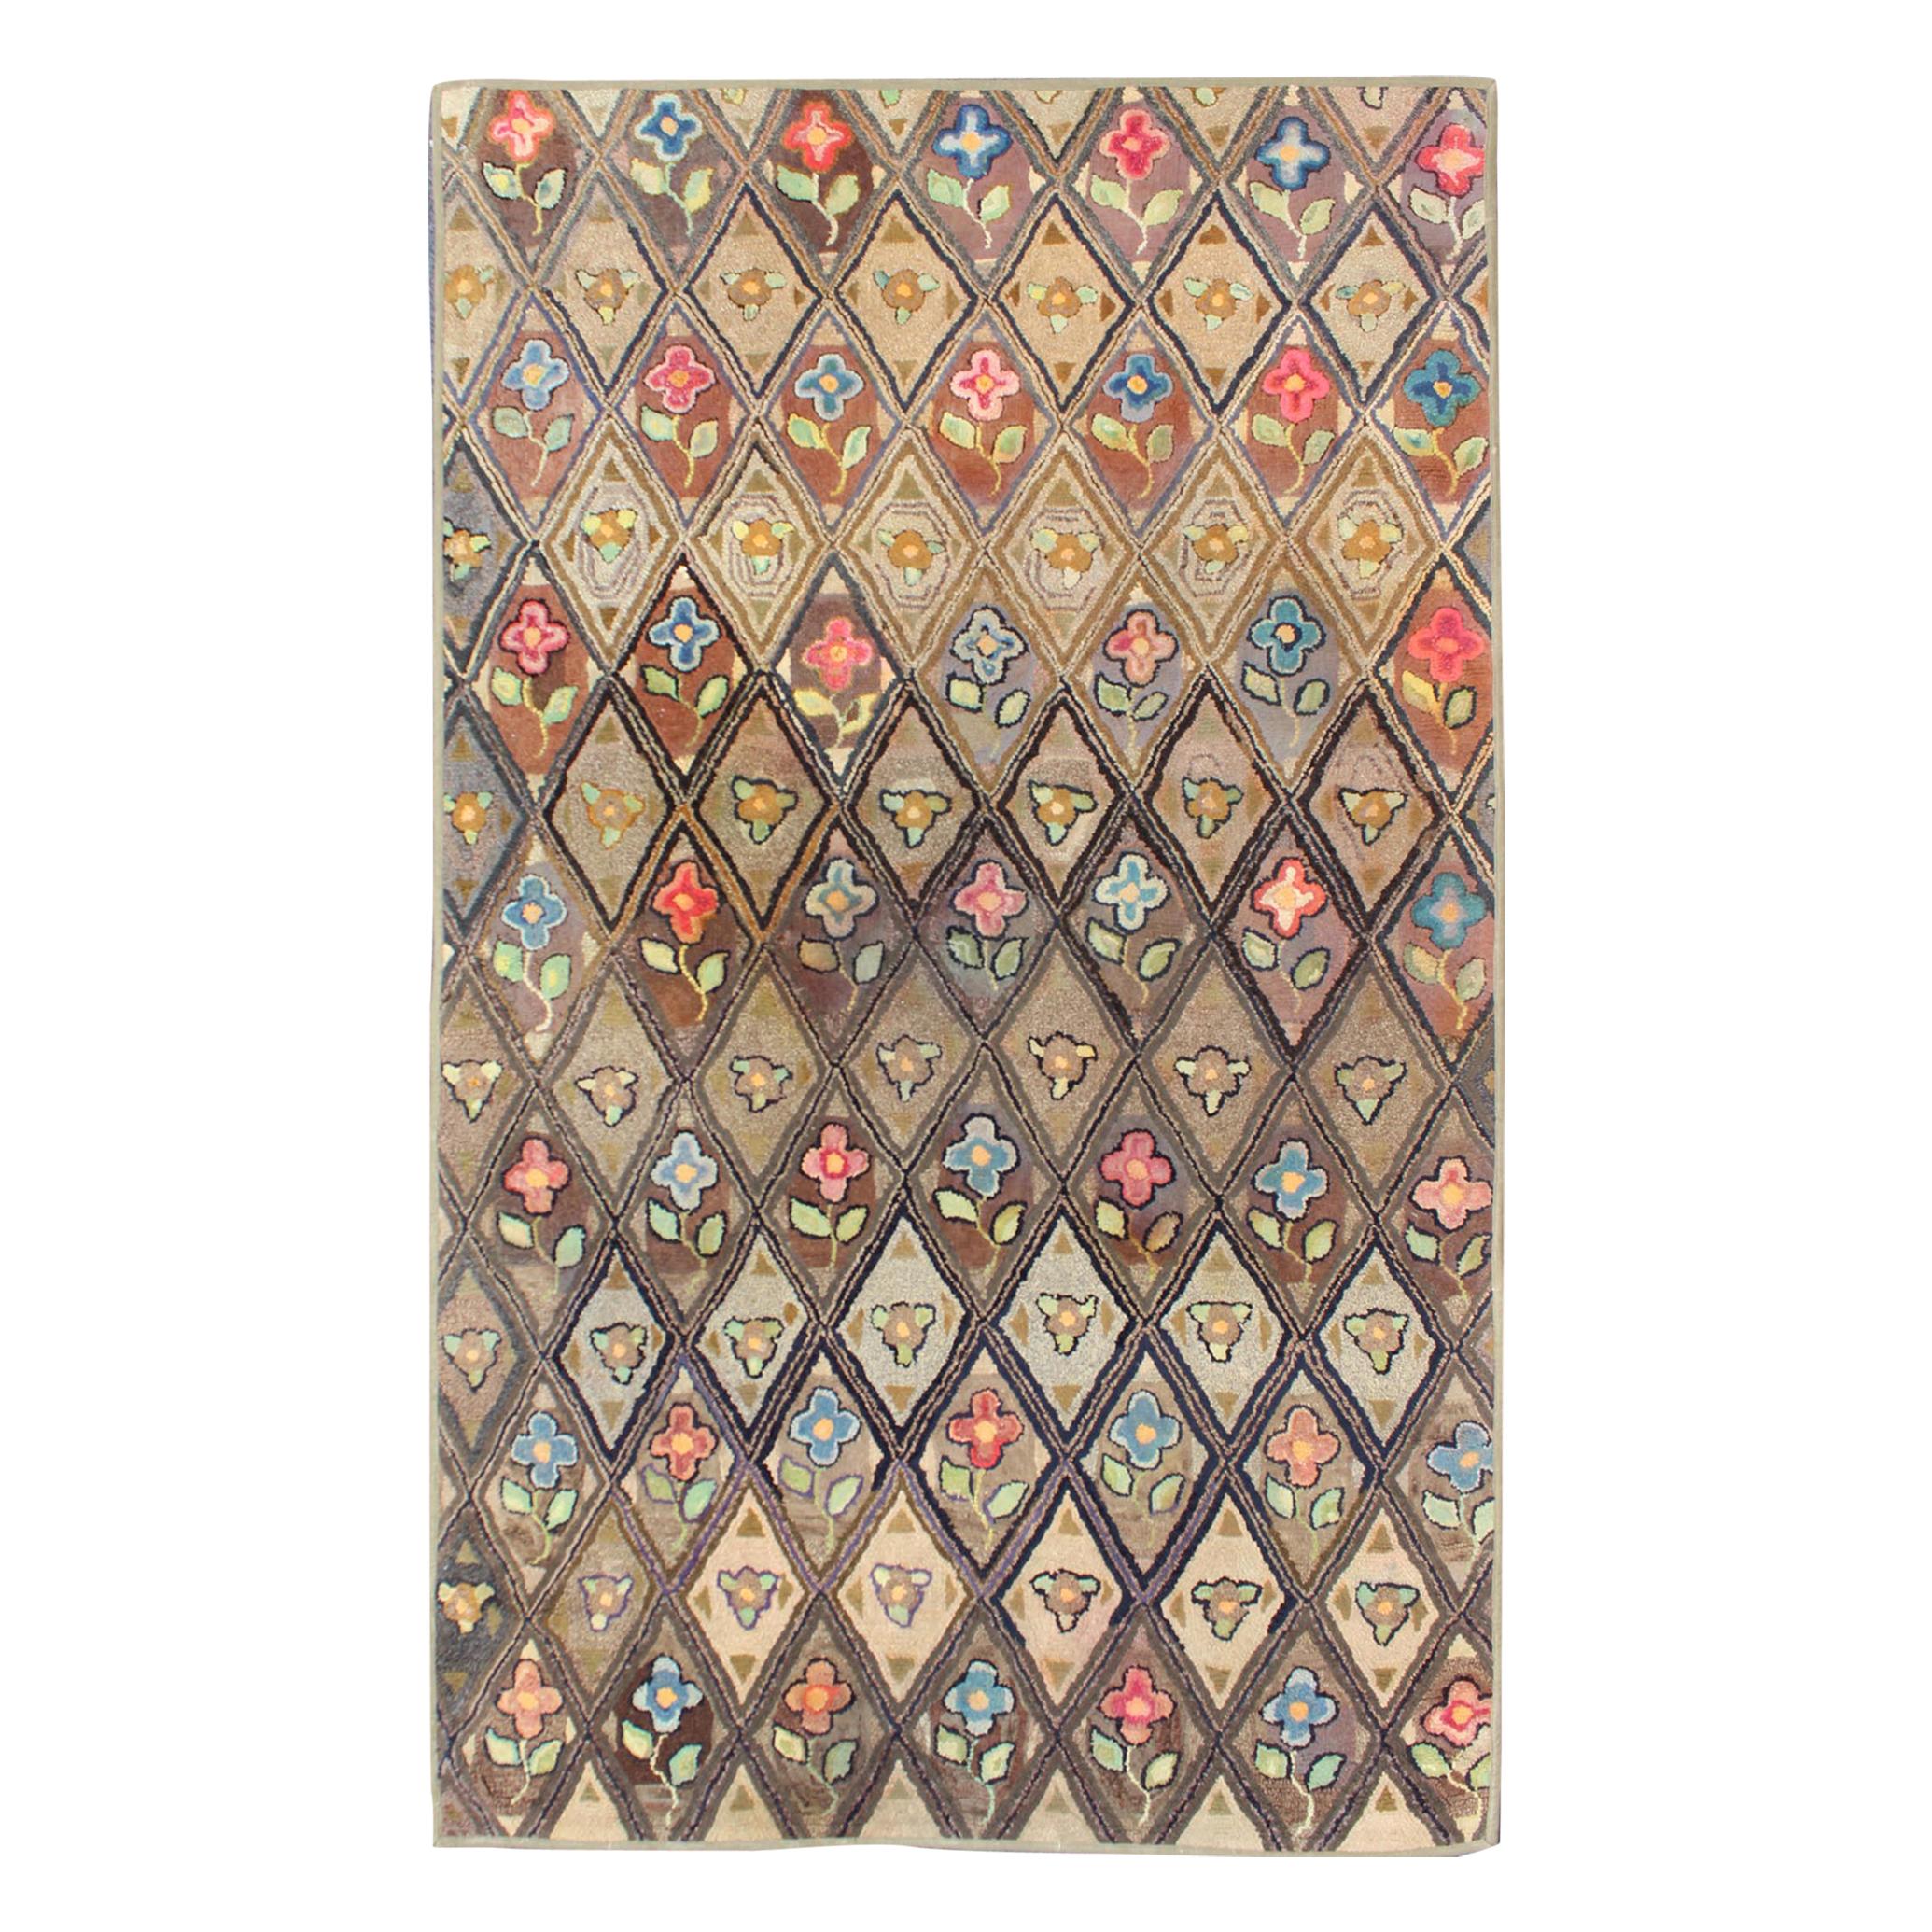 Hervorragender antiker amerikanischer Kapuzenteppich mit floralem Diamantmuster